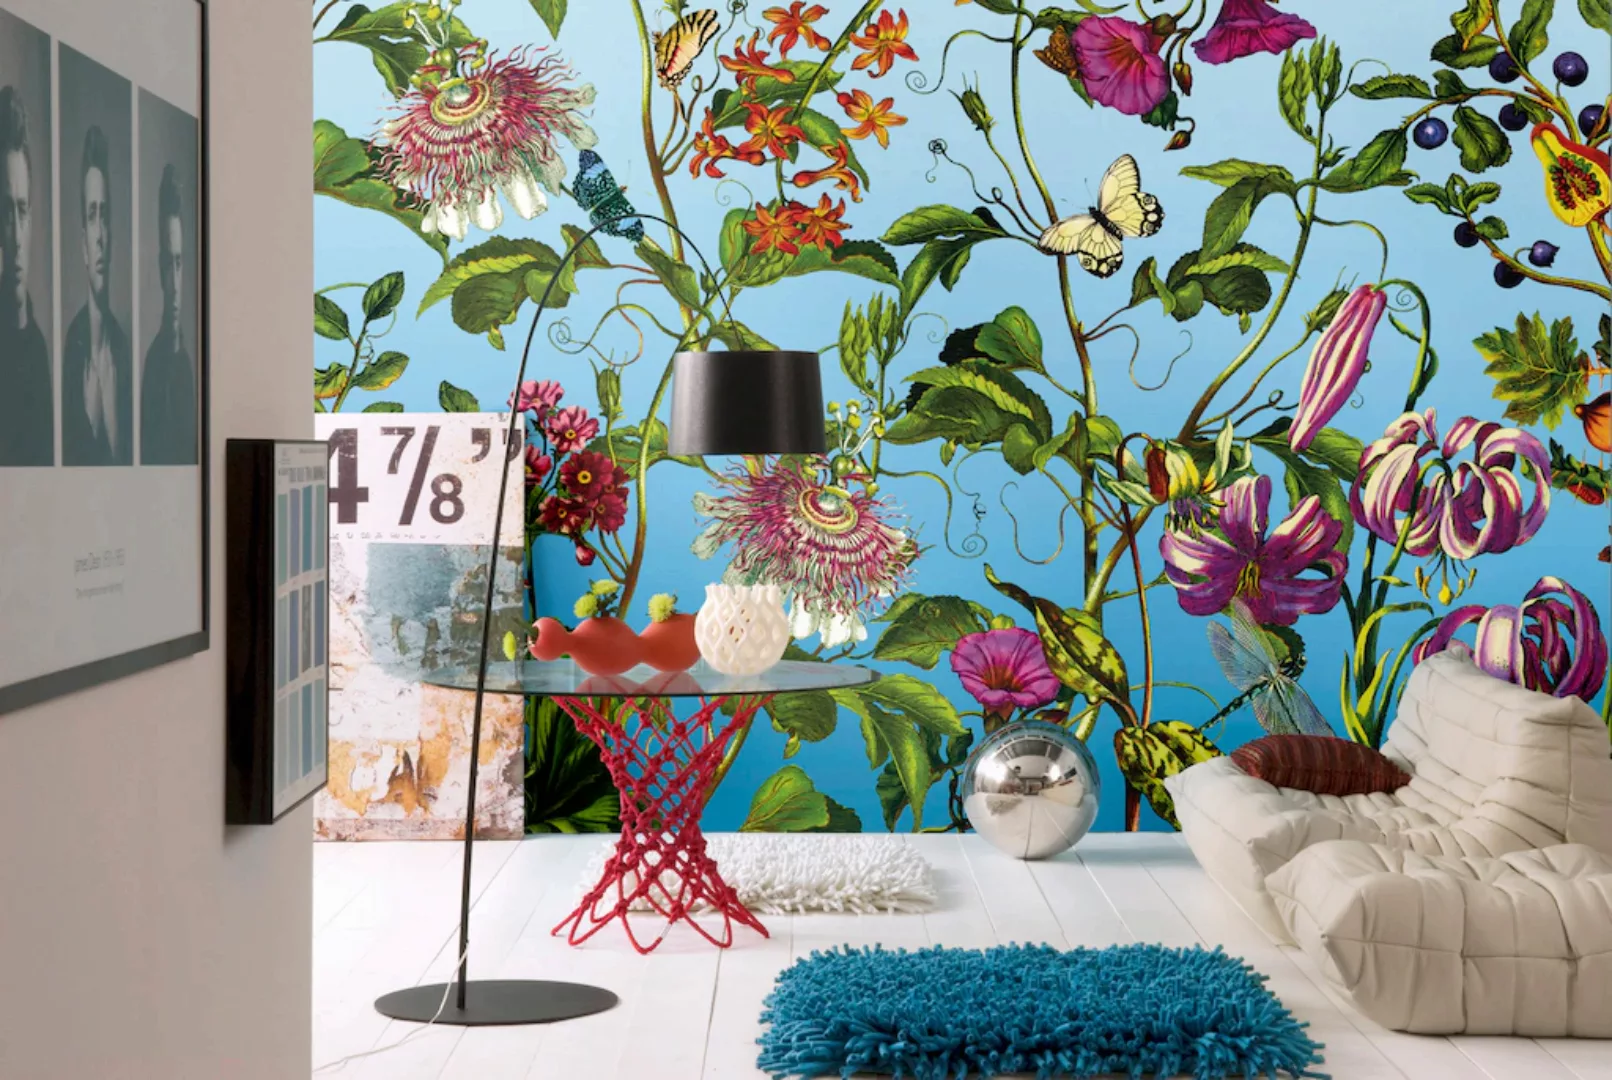 KOMAR Vlies Fototapete - Jardin - Größe 368 x 248 cm mehrfarbig günstig online kaufen